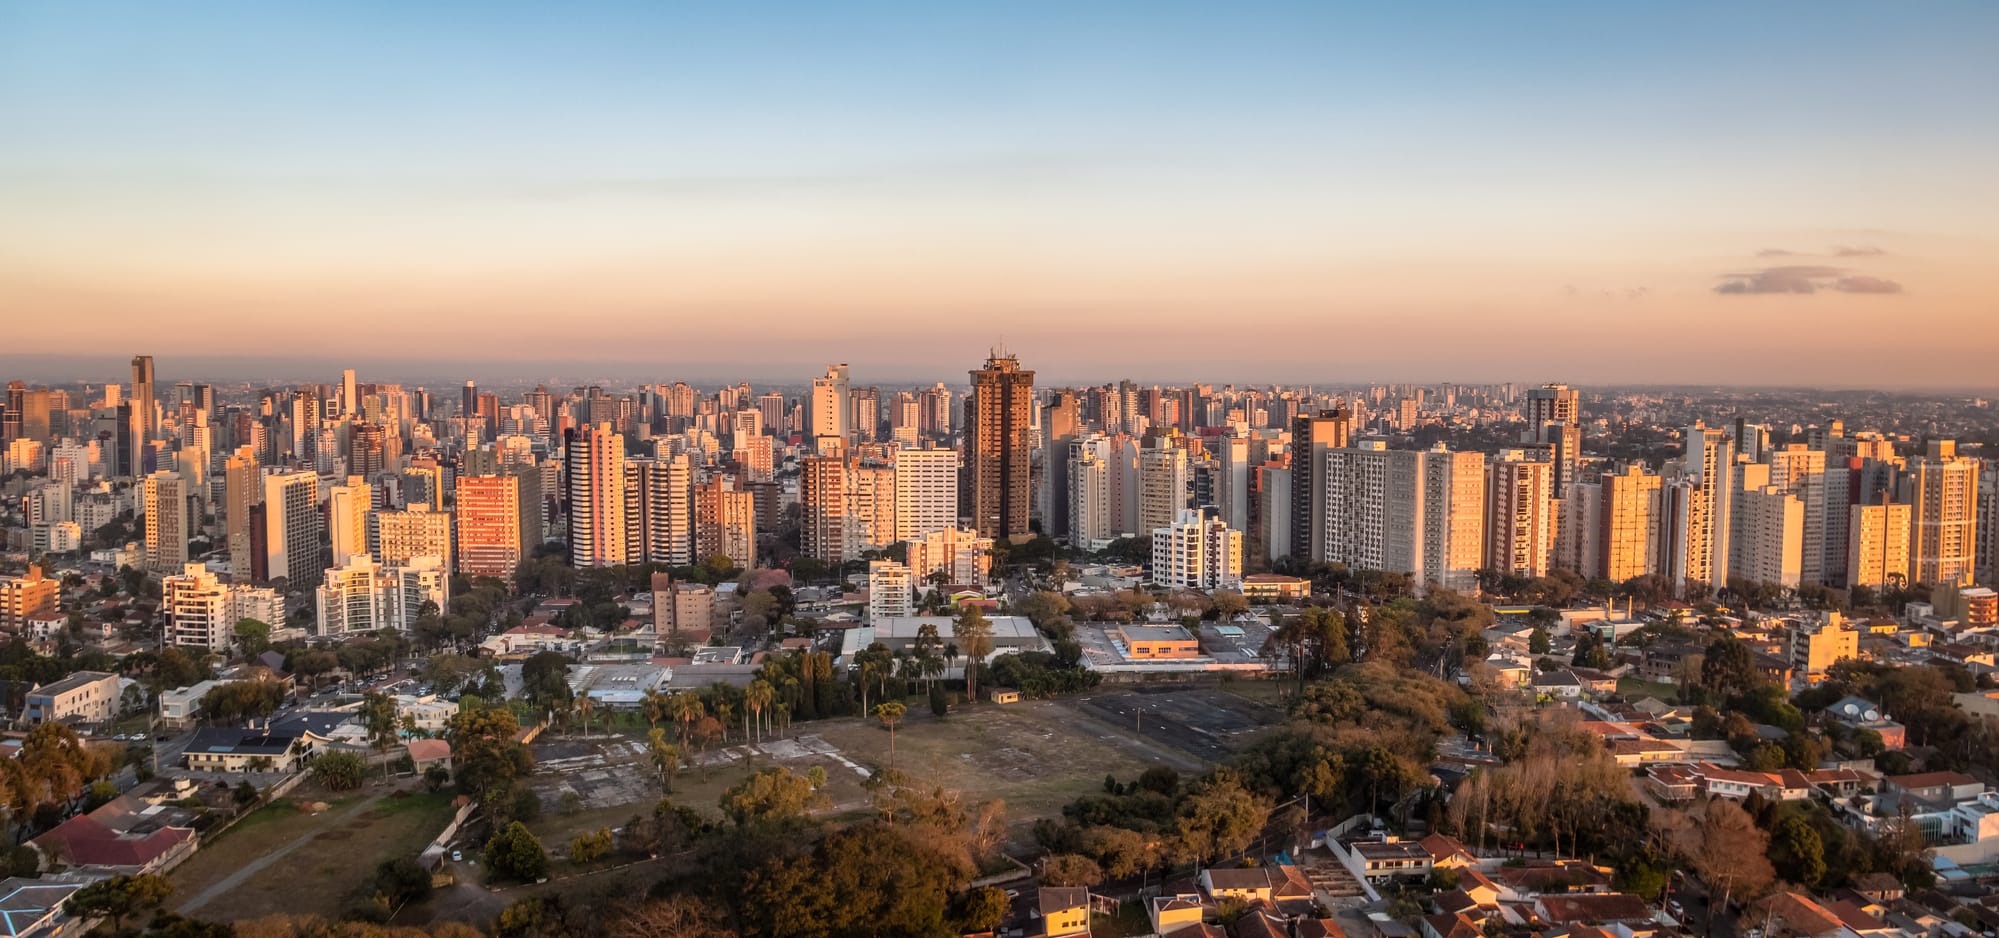 Aerial view of Curitiba City at sunset - Curitiba, Parana, Brazi